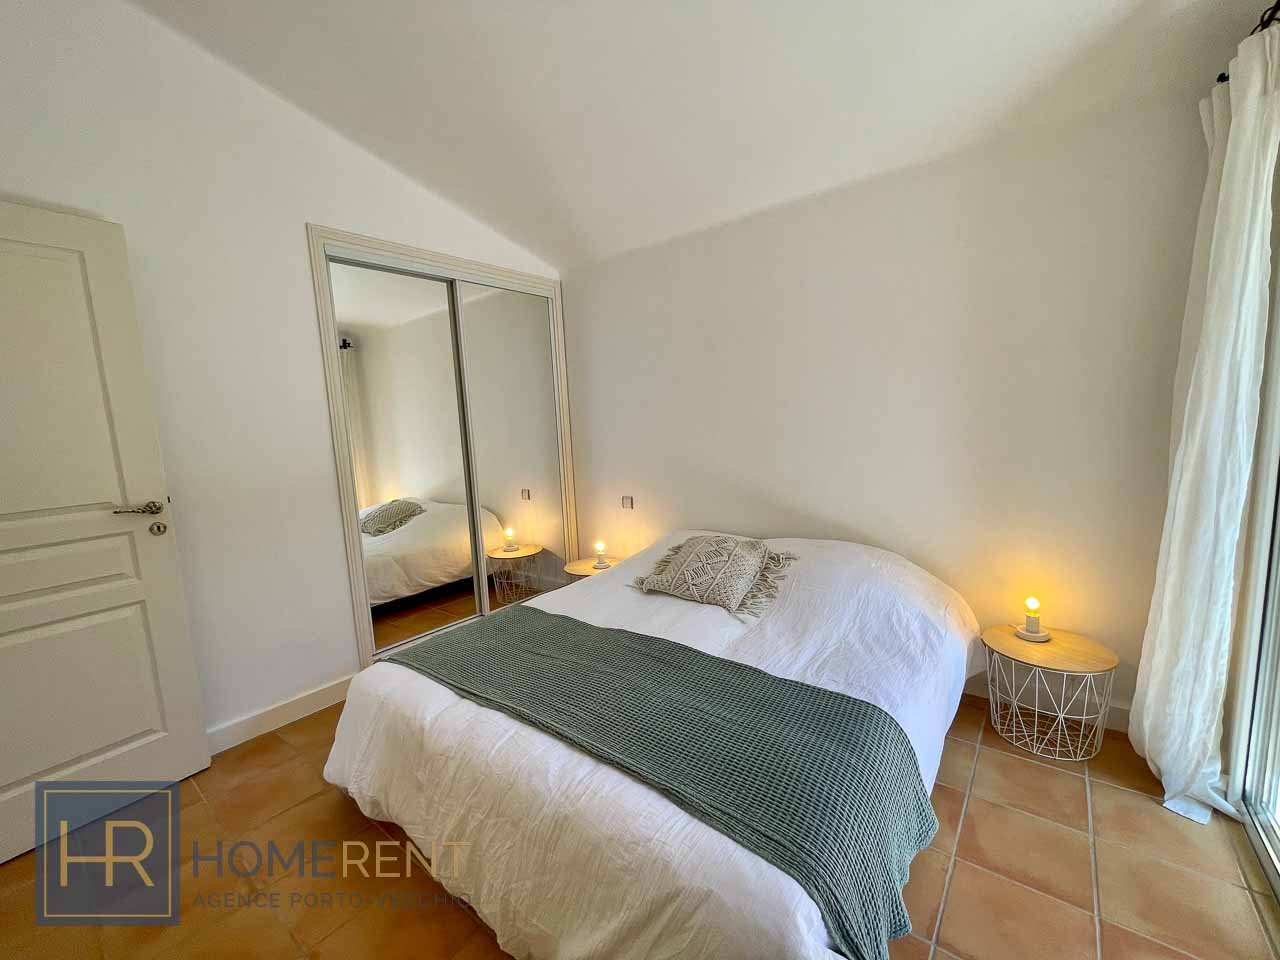 Chambre lit double location villa Corse Porto Vecchio plage Pinarello Capicciola Cala Rossa St Cyprien piscine luxe